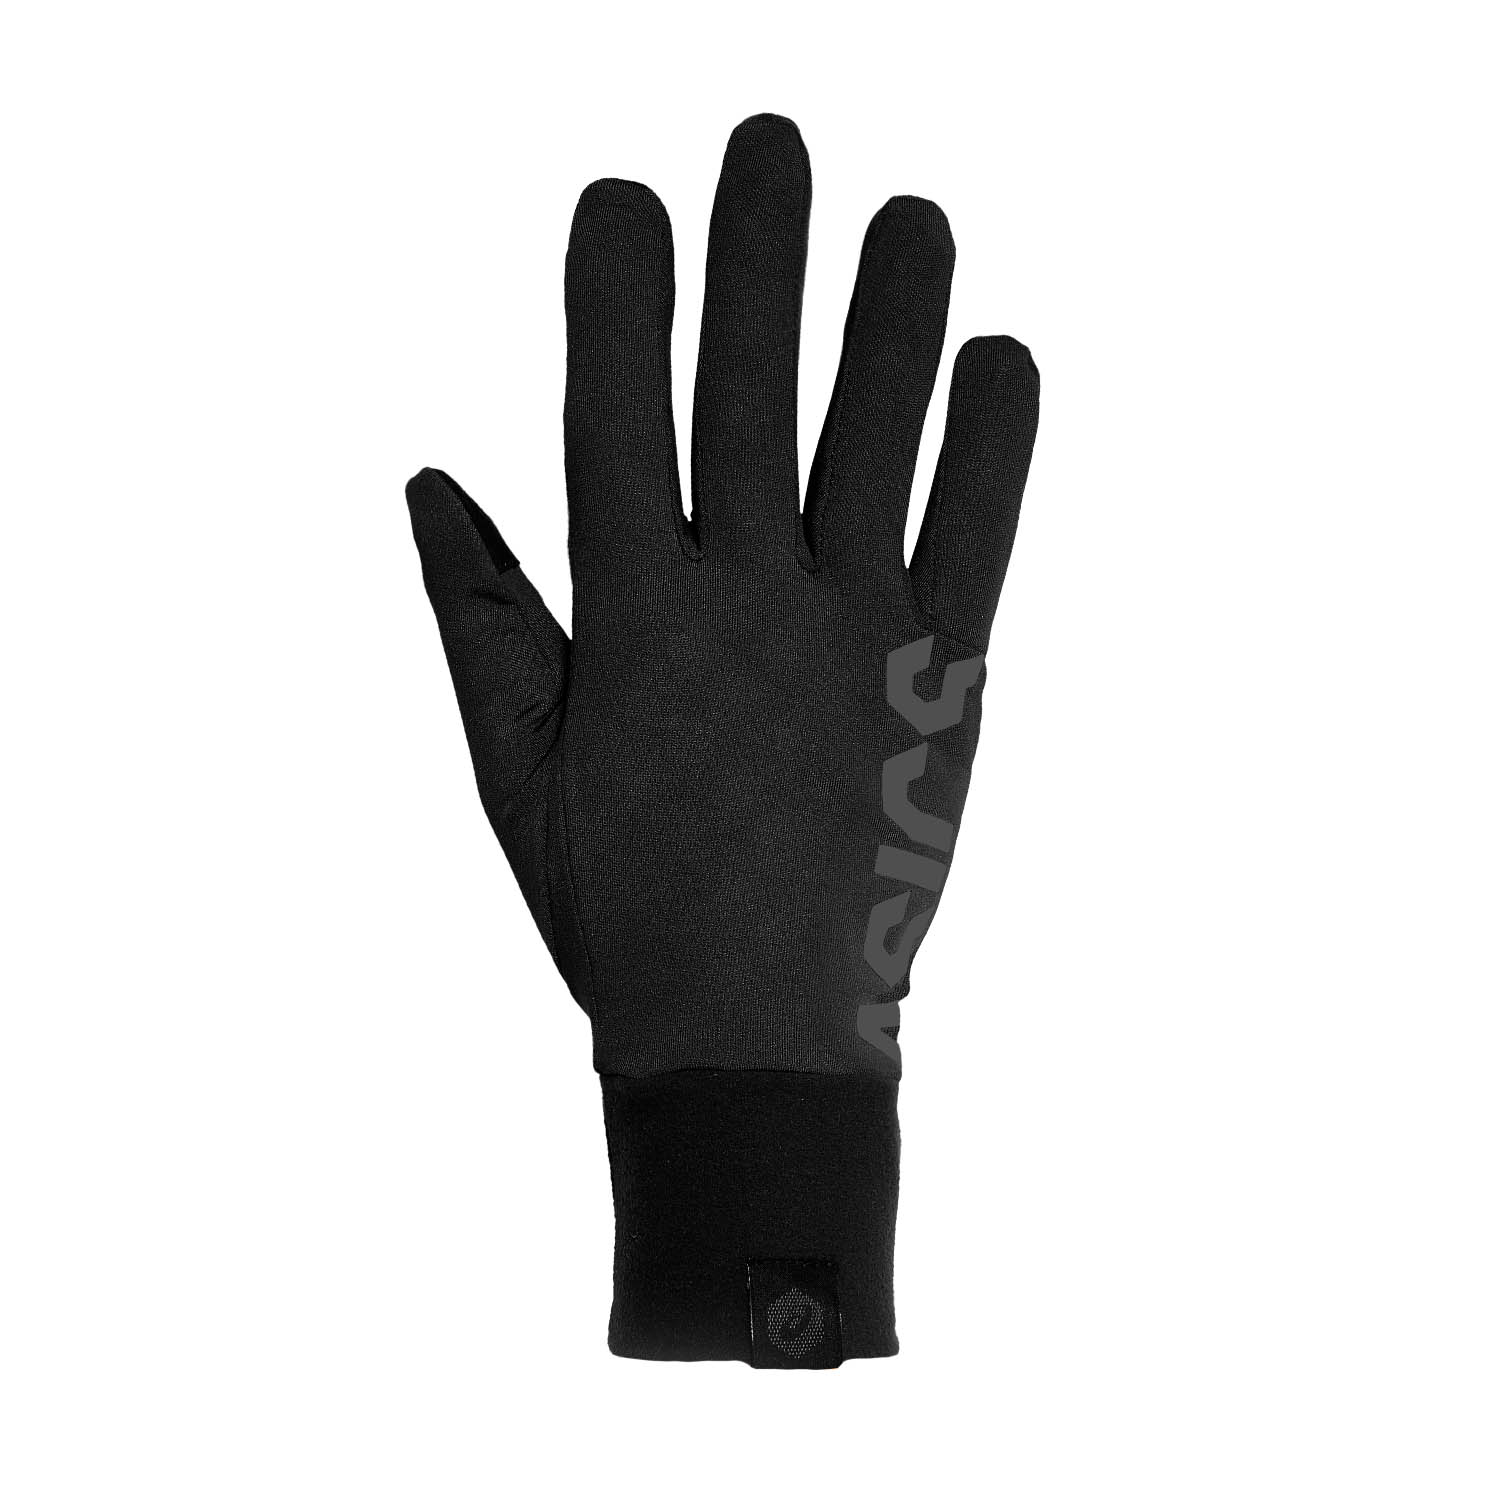 Asics Basic Gloves - Performance Black